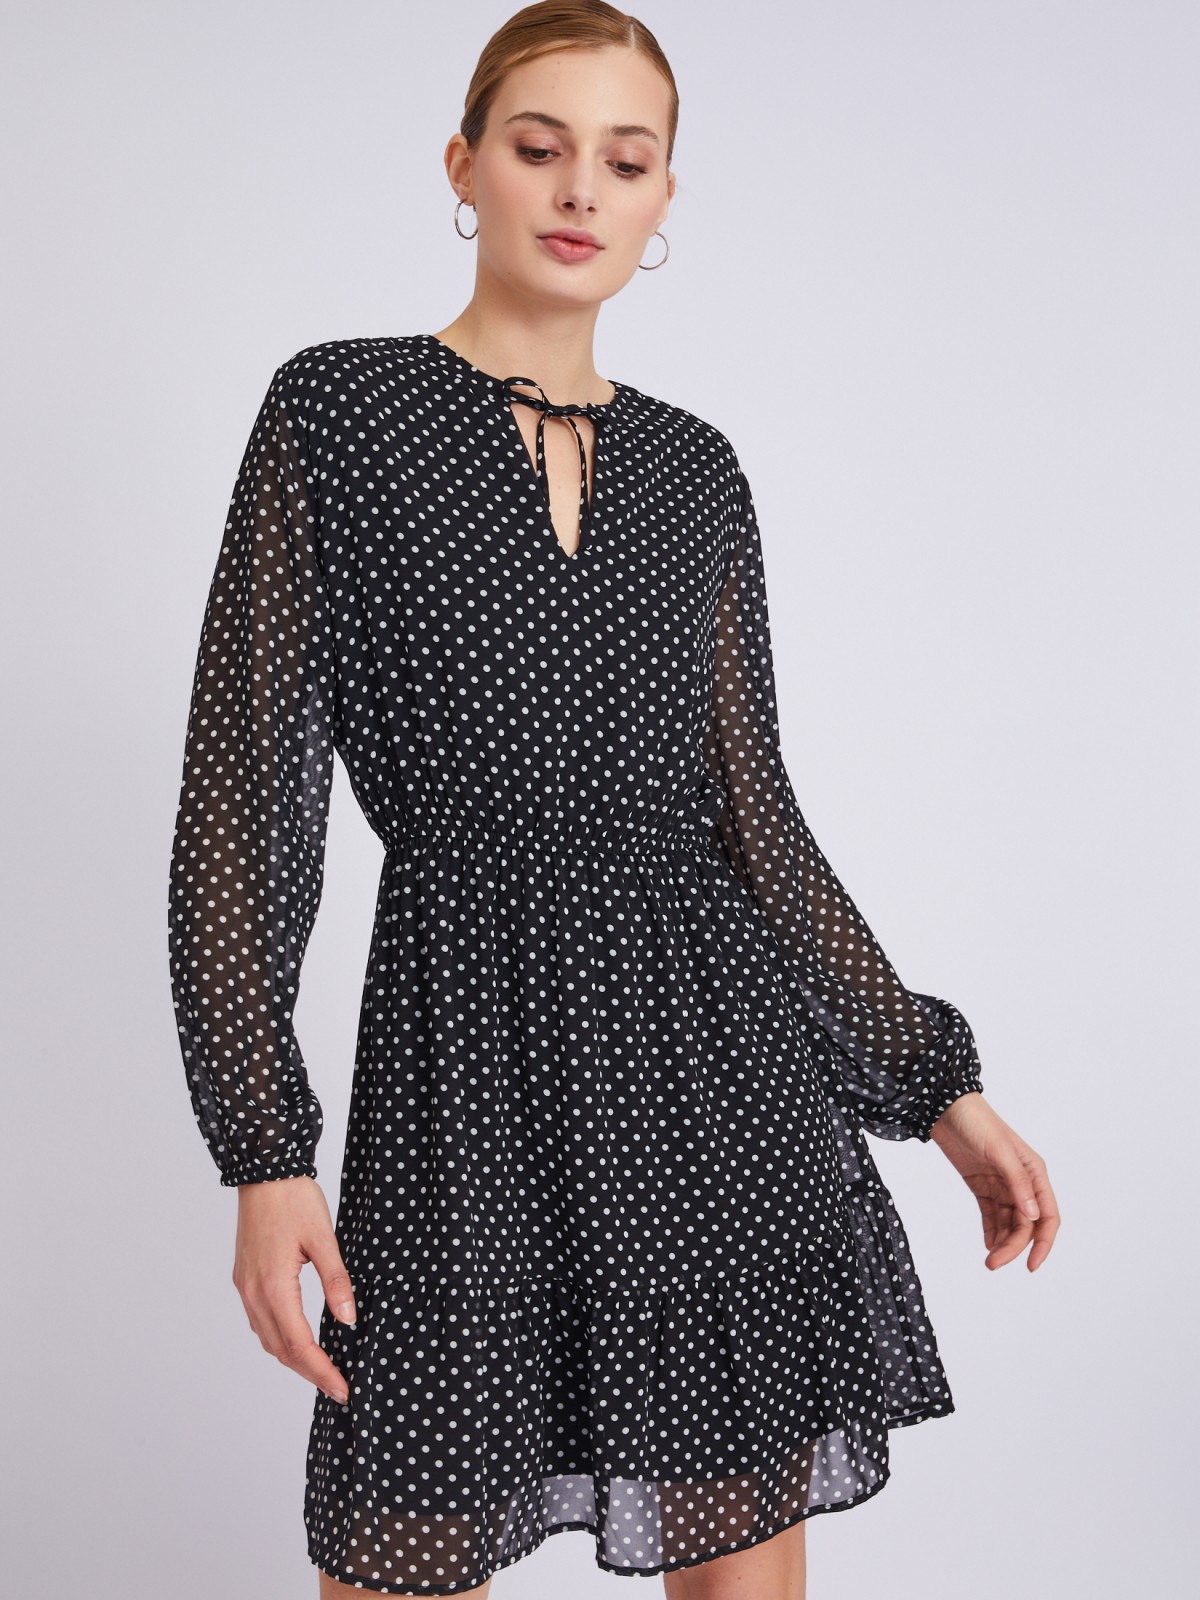 Шифоновое платье с узором в горошек zolla 023318262063, цвет черный, размер S - фото 1